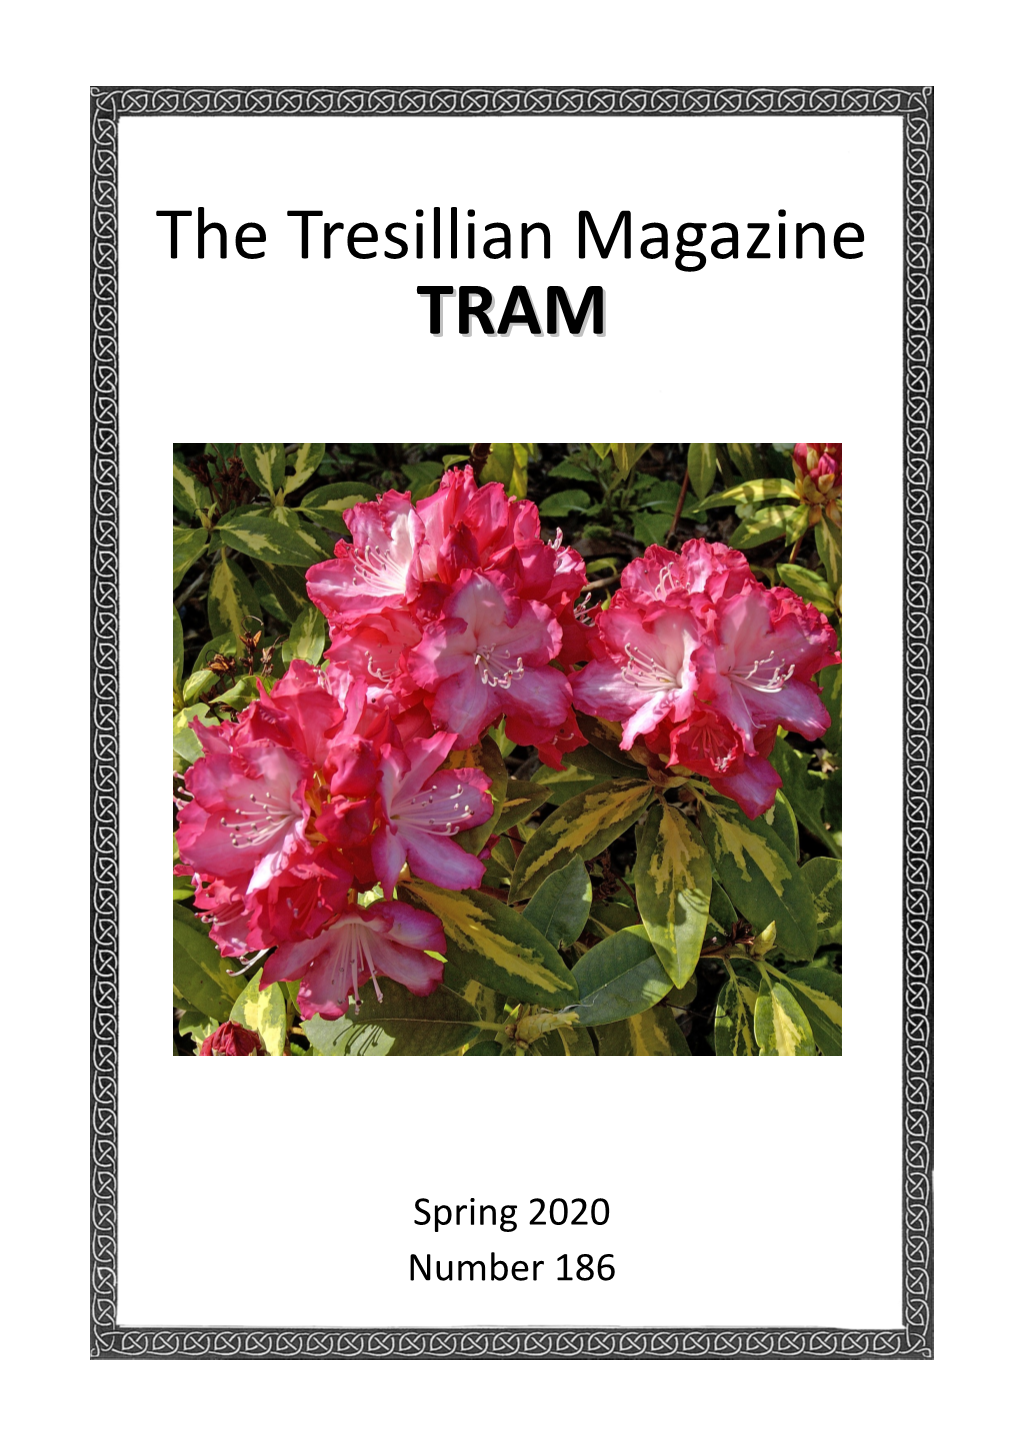 TRAM 186 Spring 2020